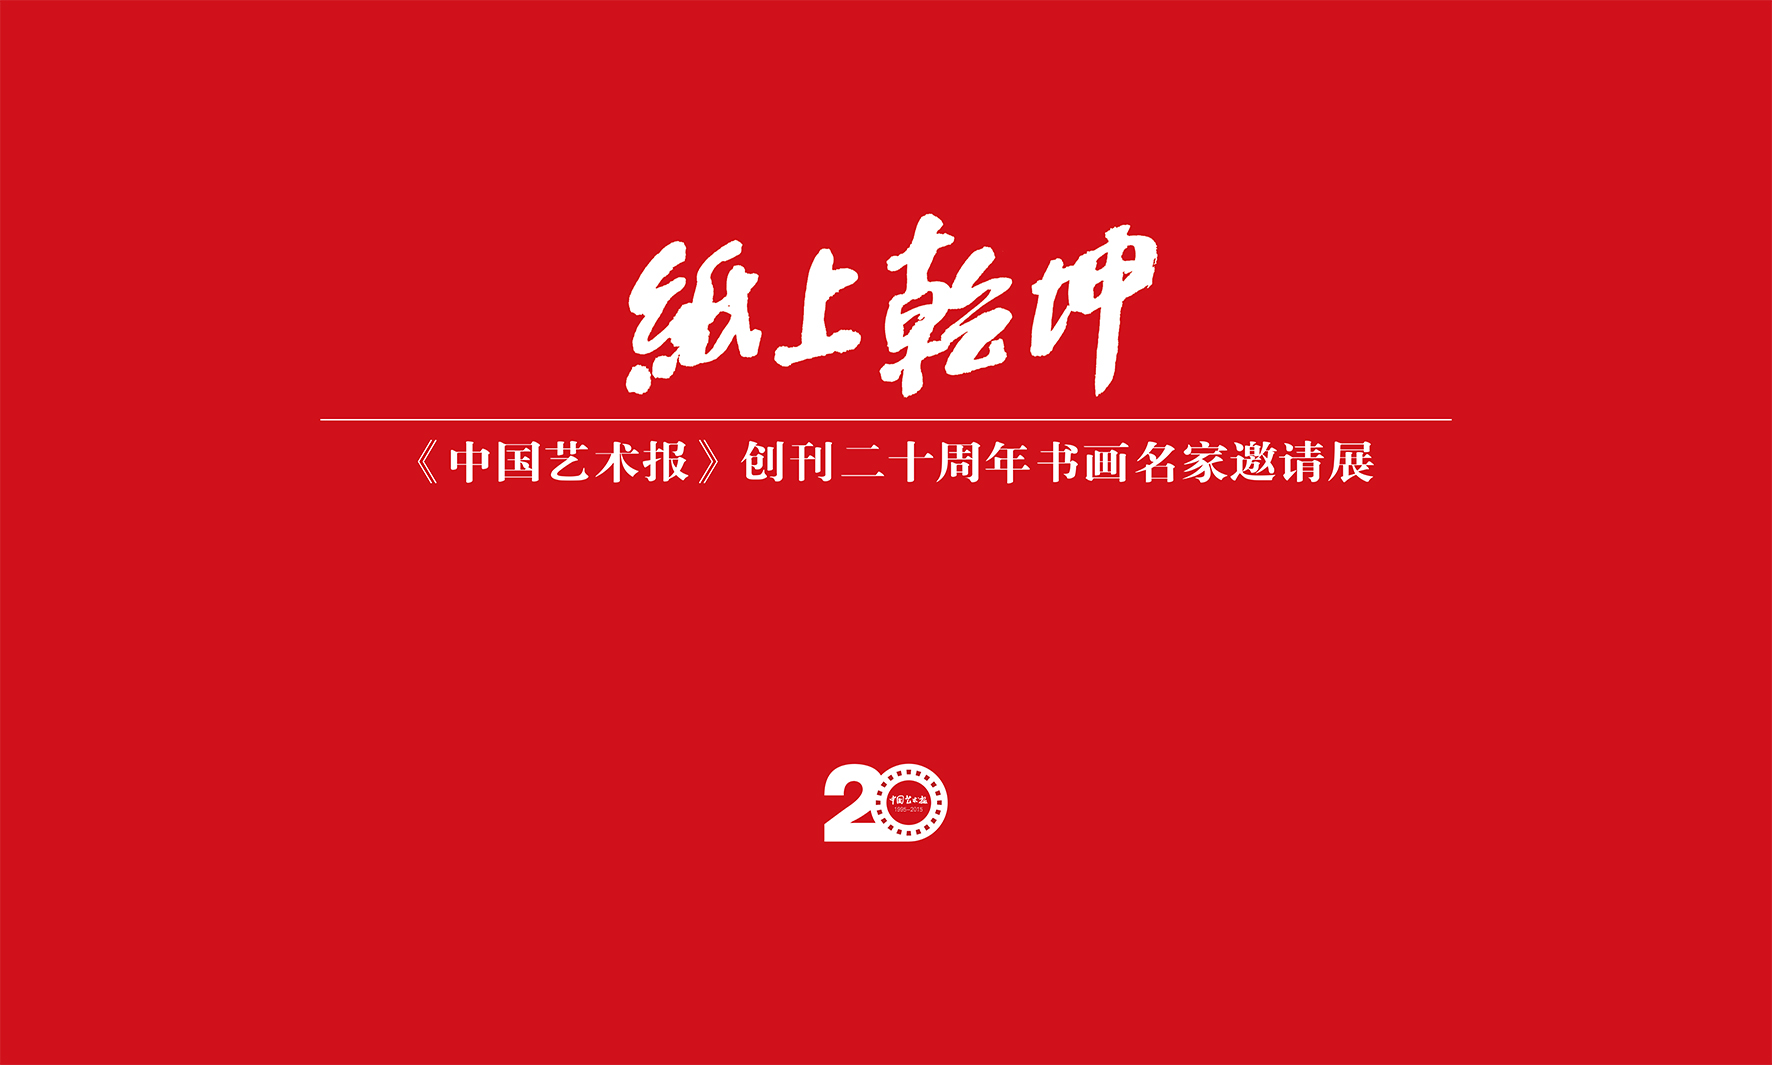 【展览】纸上乾坤——《中国艺术报》创刊二十周年名家邀请展